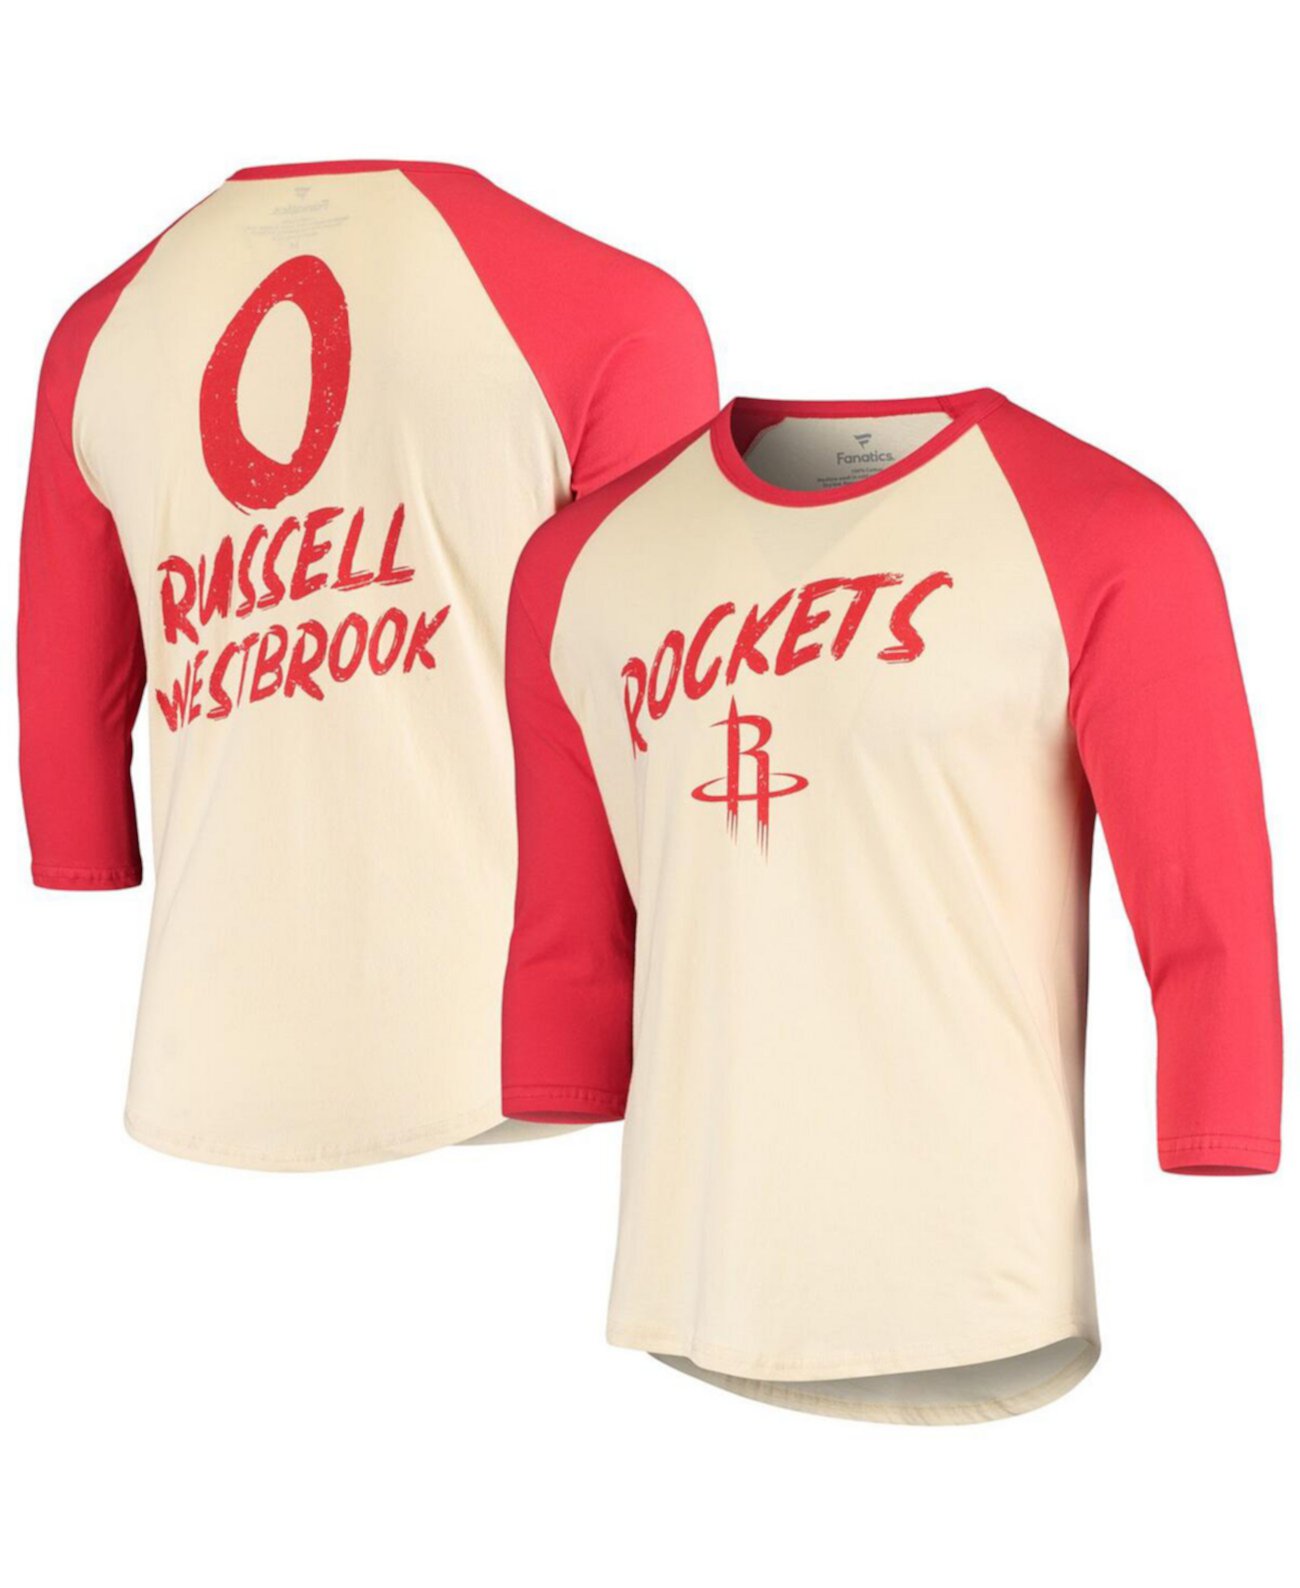 Мужская футболка кремового и красного цвета с логотипом Russell Westbrook Houston Rockets реглан с рукавом 3/4 Fanatics